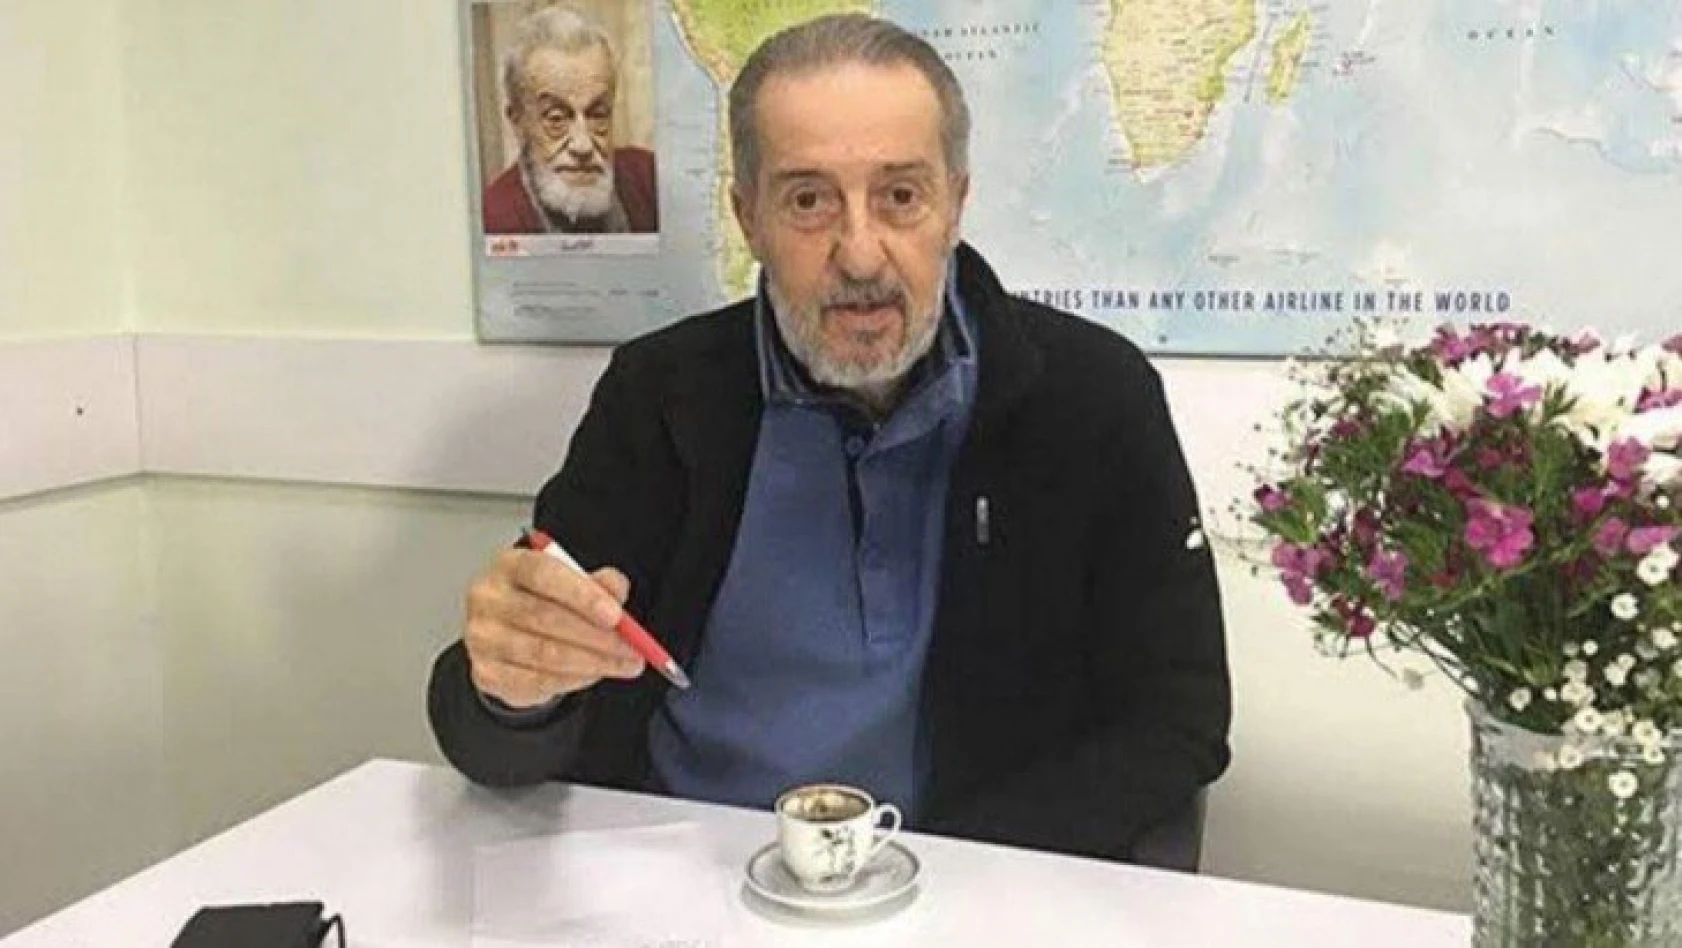 Karikatürist ve yazar Yalçın Turgut Balaban vefat etti